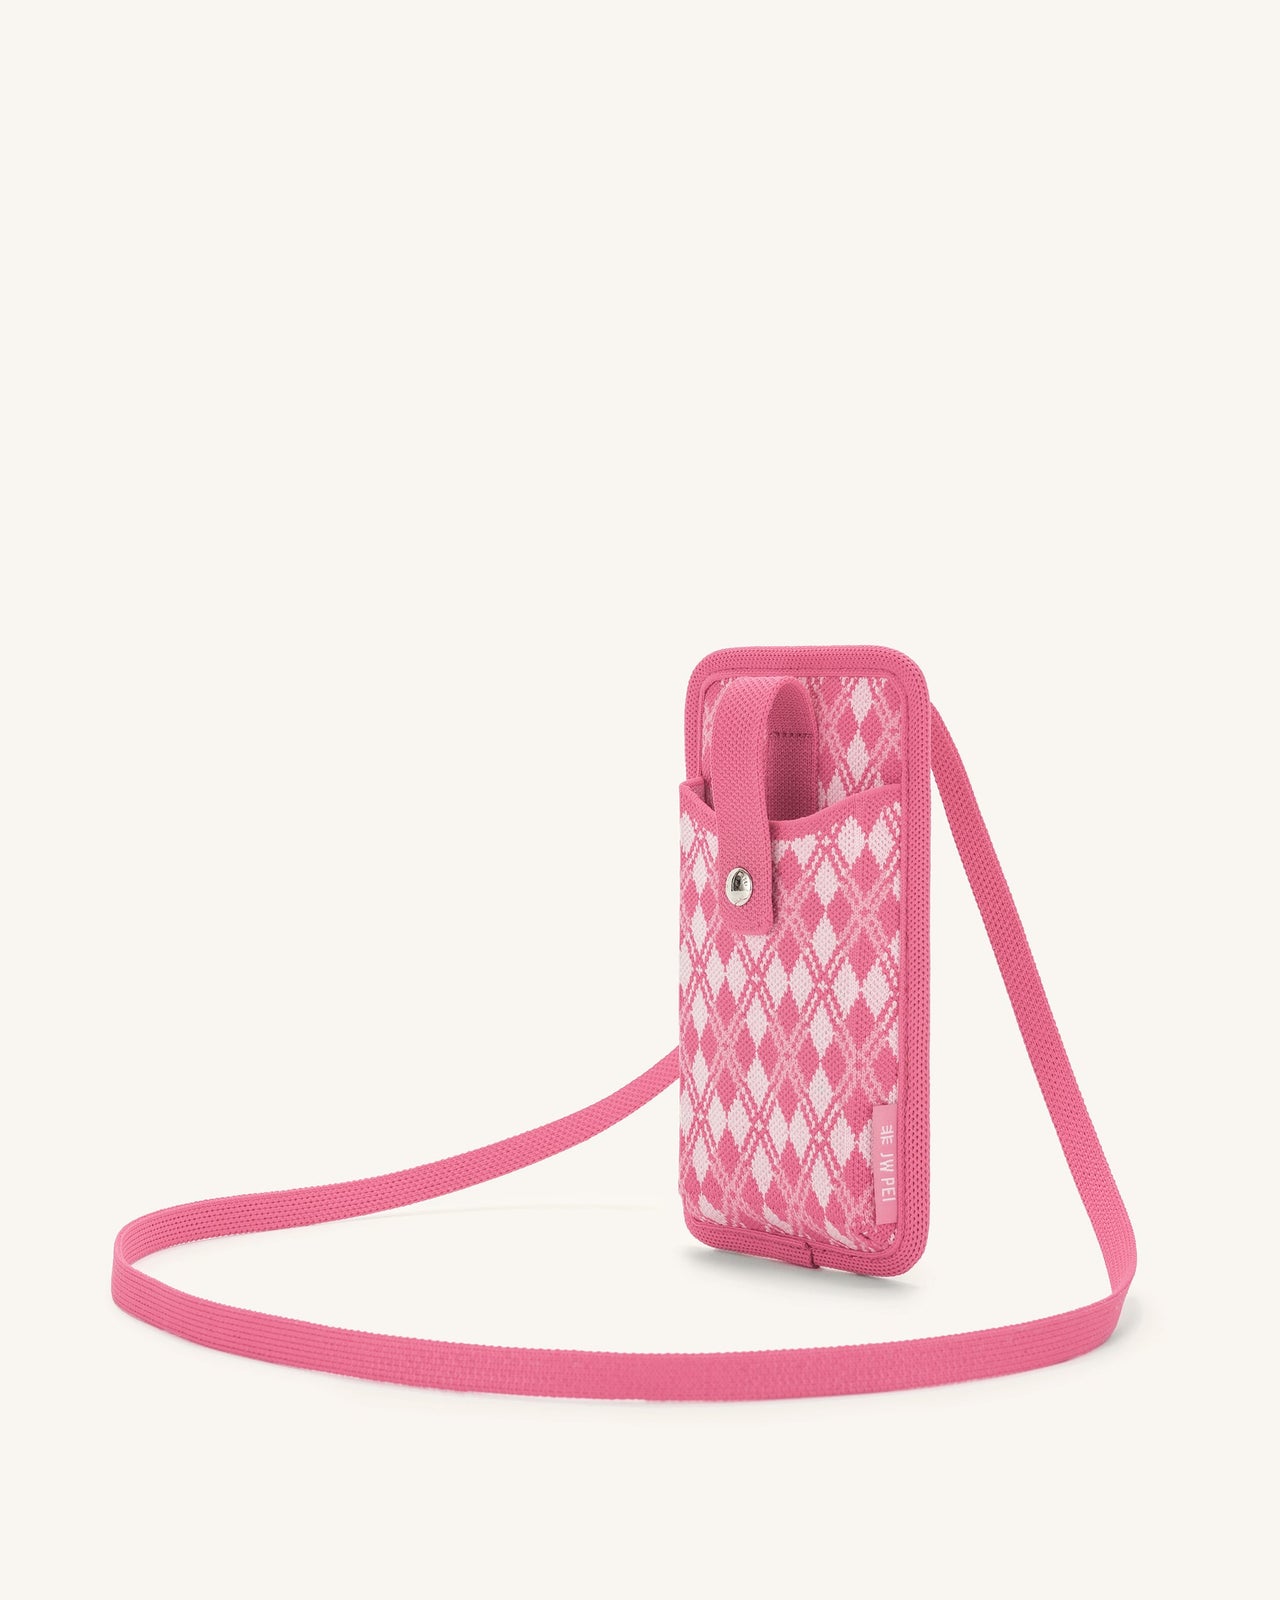 Aylin 針織手機包 - 粉色 & 亮粉色